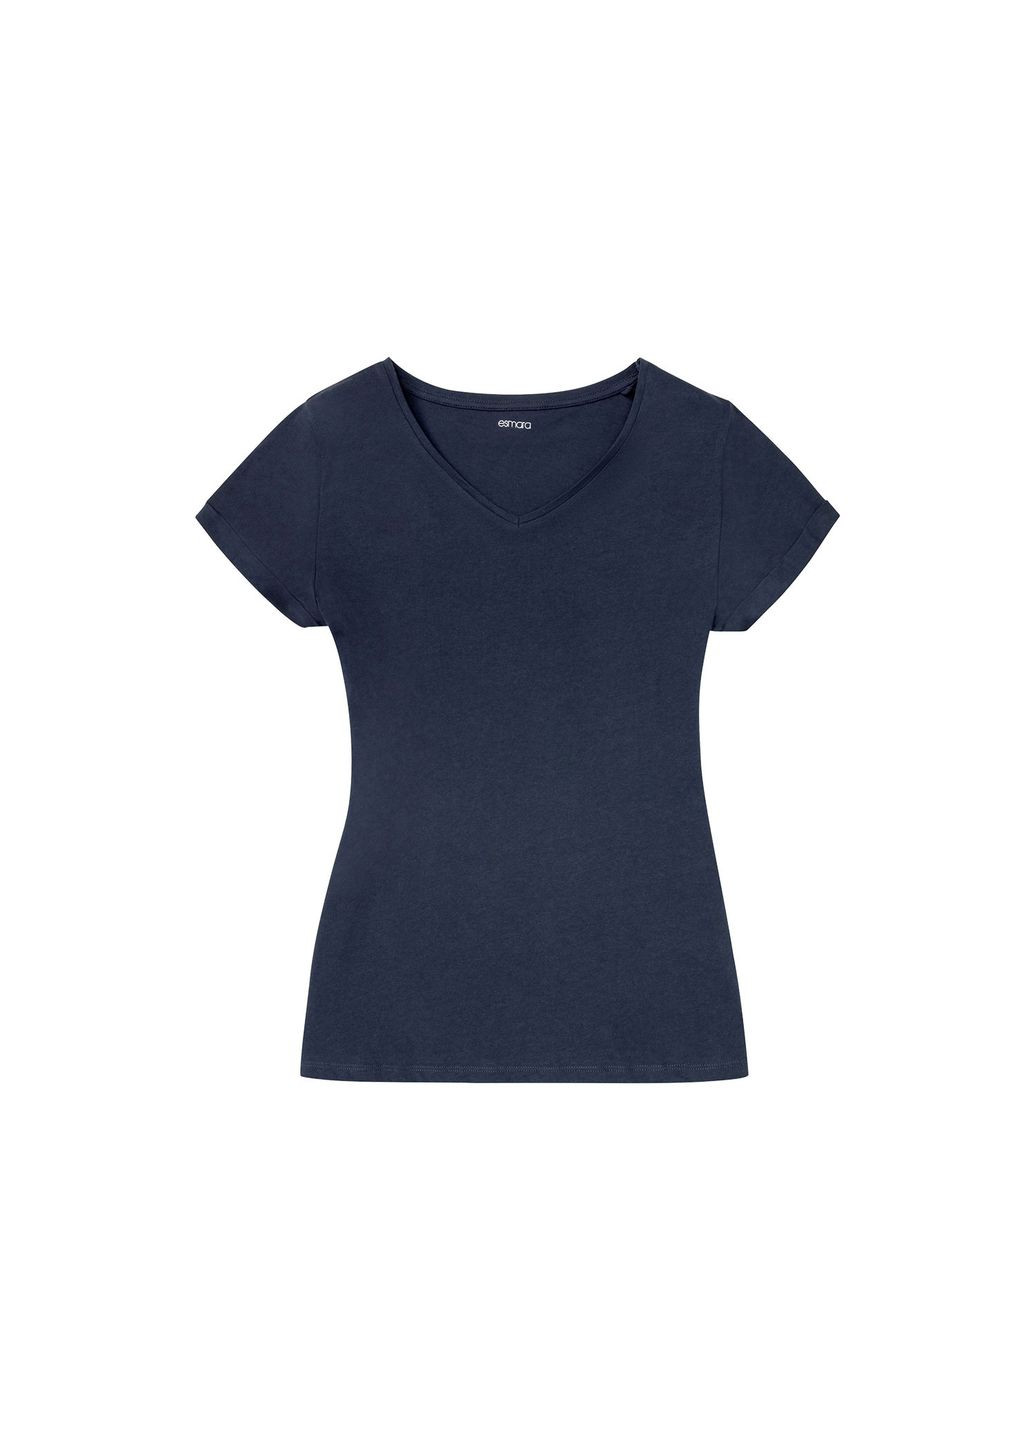 Темно-синя піжама (футболка і шорти) для жінки 356910-1 темно-синій Esmara